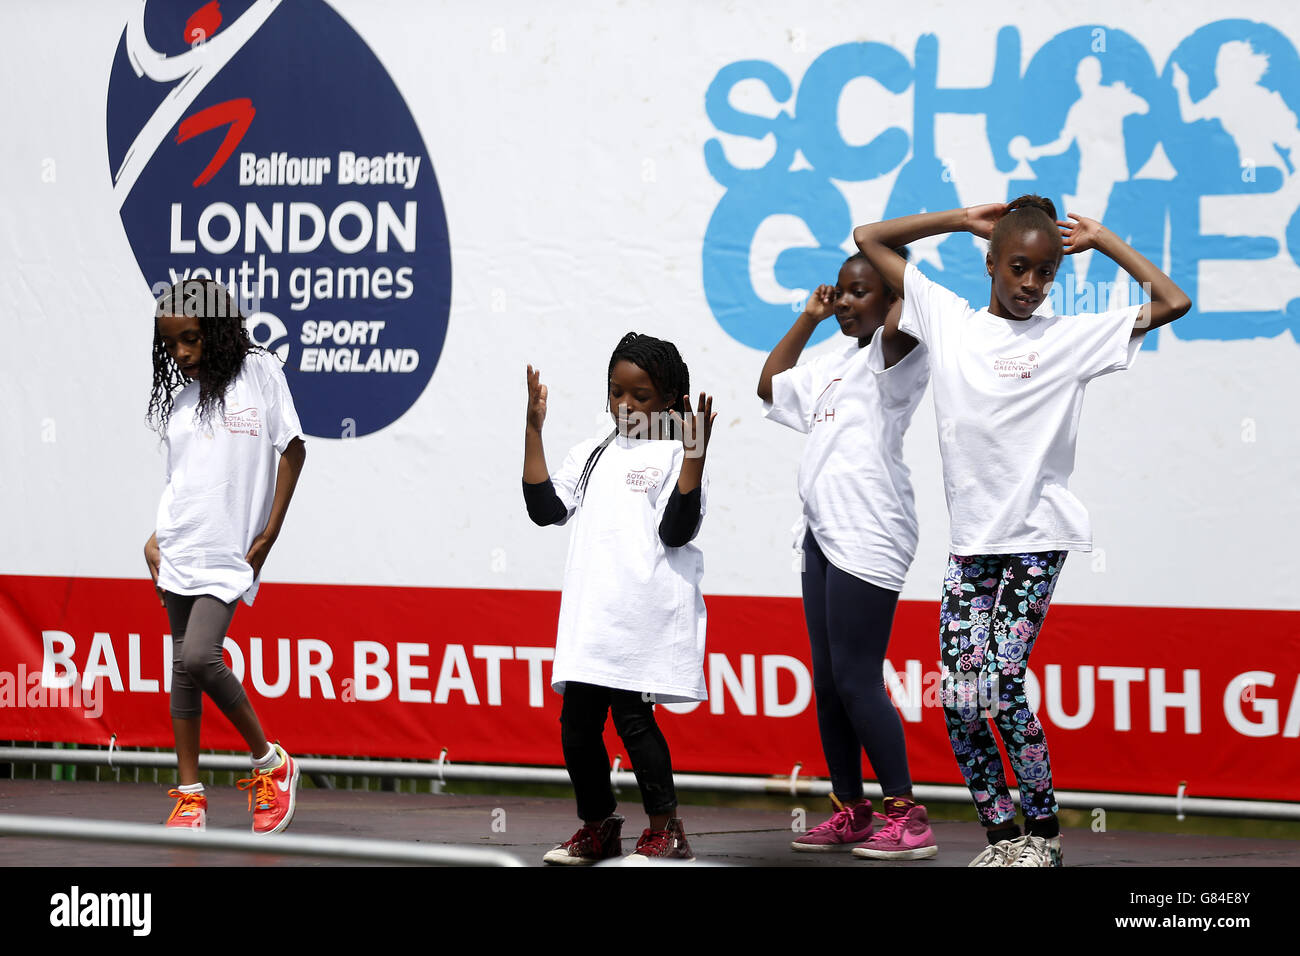 Atletismo - 2015 Londres los juegos juveniles - Día 4 - Crystal Palace Foto de stock